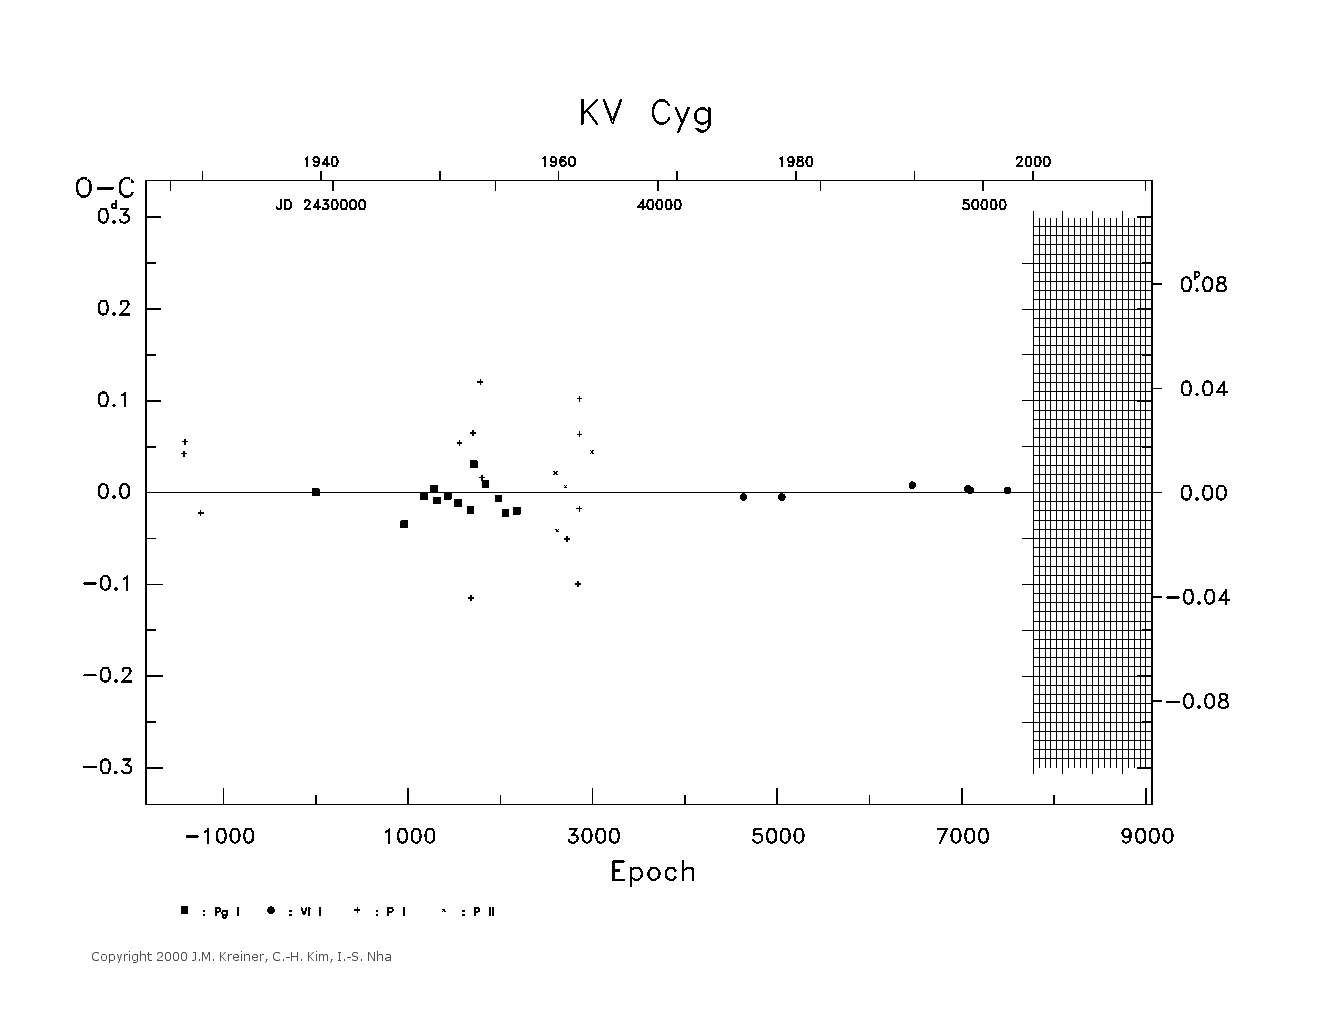 [IMAGE: large KV CYG O-C diagram]